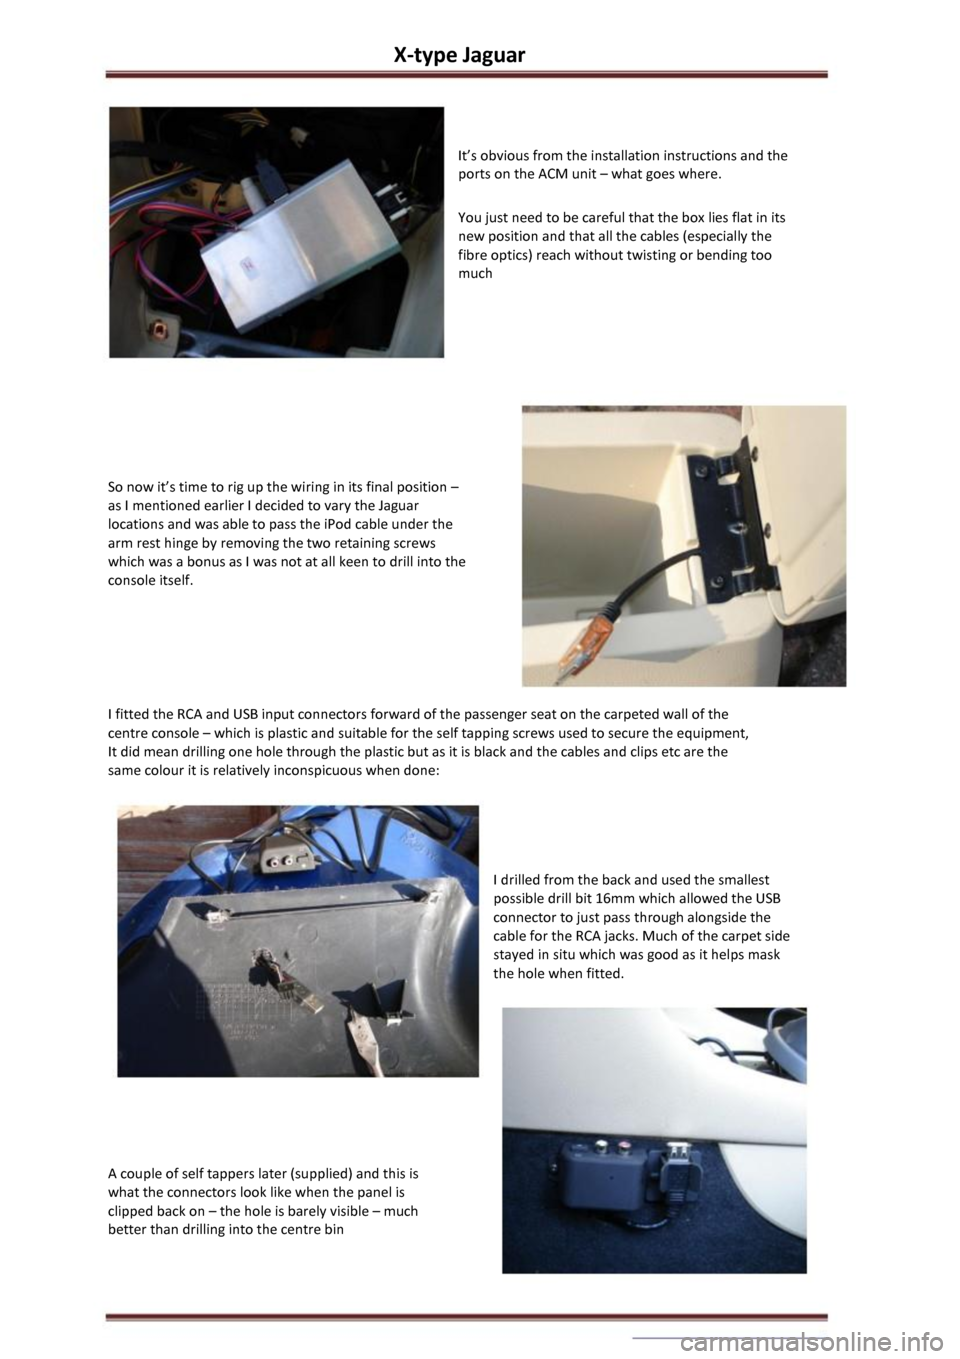 2003 jaguar x type repair manual pdf